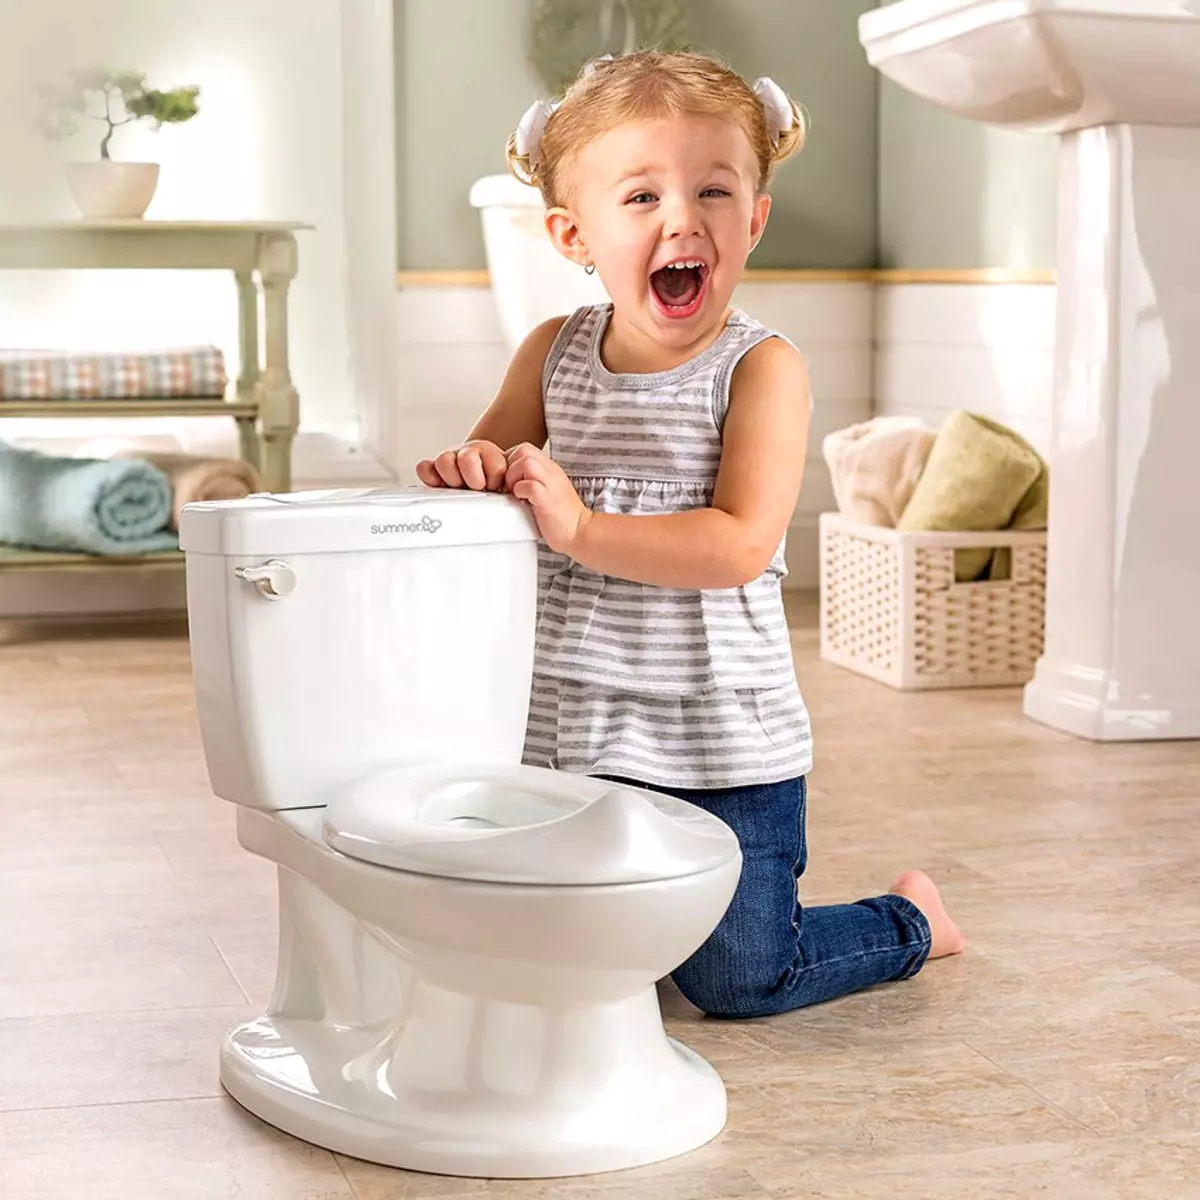 थेट रिलीझसह शौचालय: क्षैतिज ड्रेन असलेल्या शौचालयाचे वैशिष्ट्य. सर्वोत्तम मार्ग म्हणजे: थेट किंवा तिरस्करणीय? आकार, उंची आणि इतर पॅरामीटर्स 10548_24